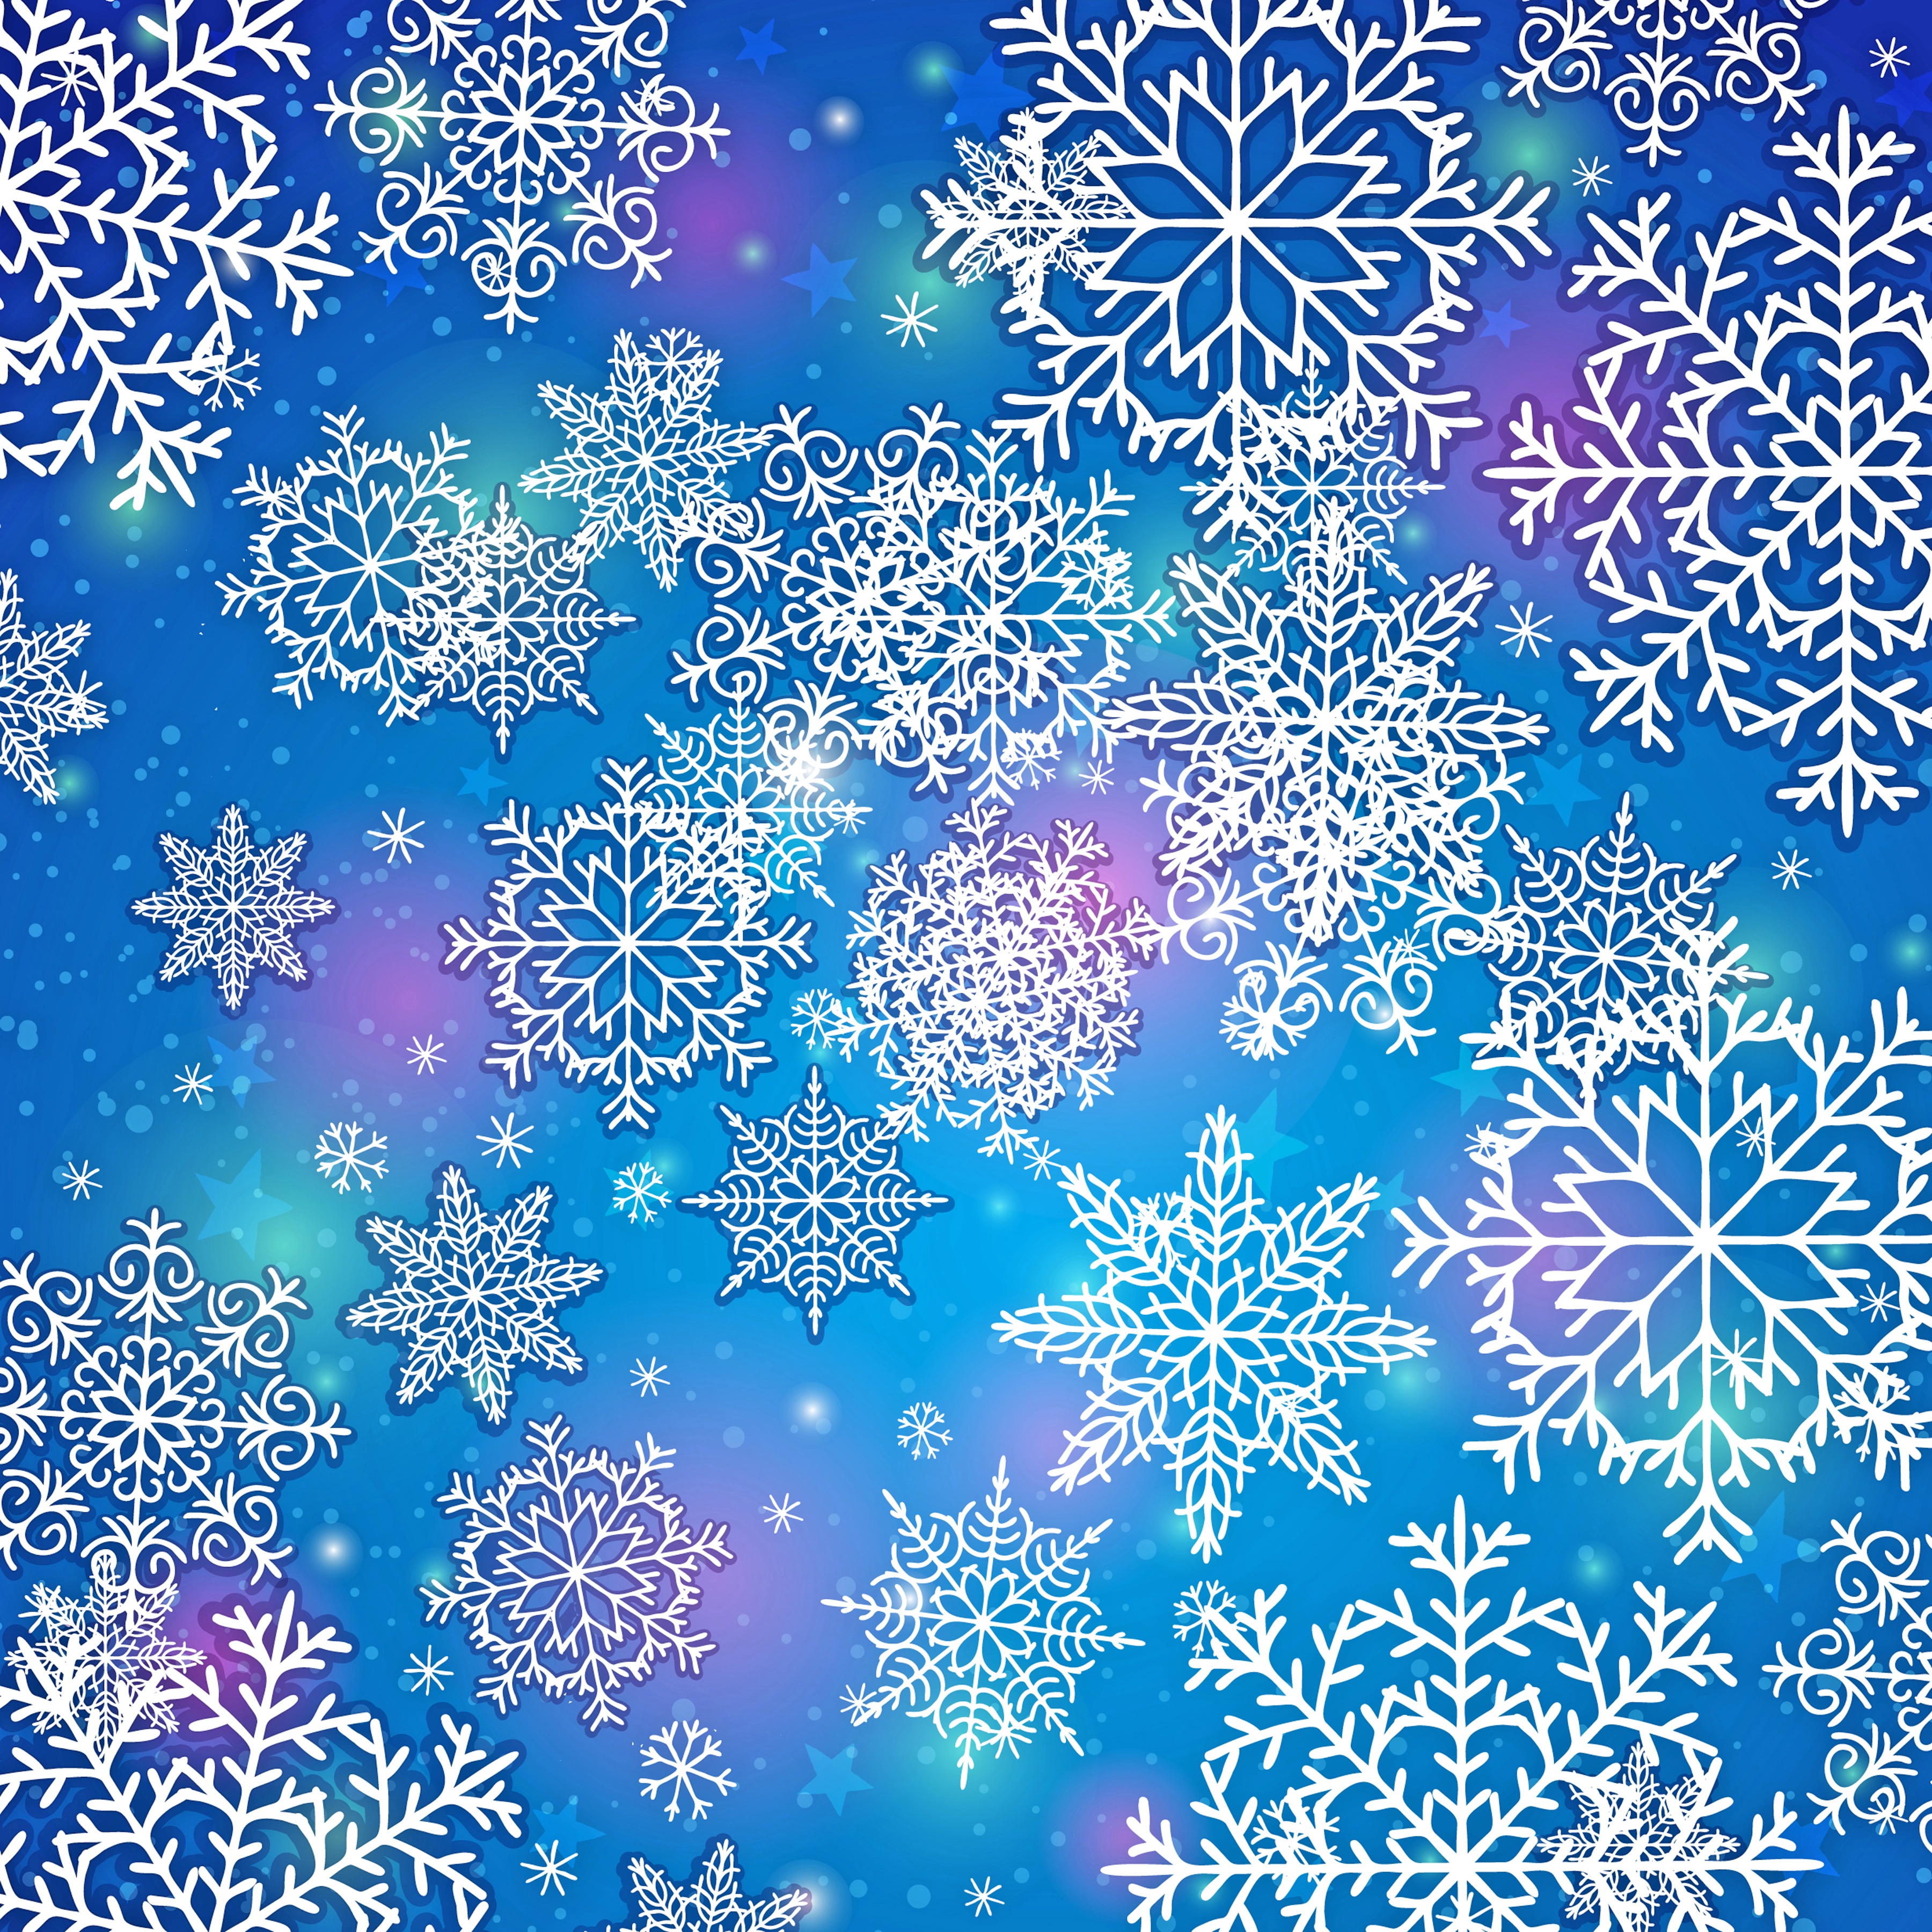 Картинки фон снежинки. Фон снежинки. Новогодний фон снежинки. Новогодняя Снежинка. Голубой фон со снежинками.